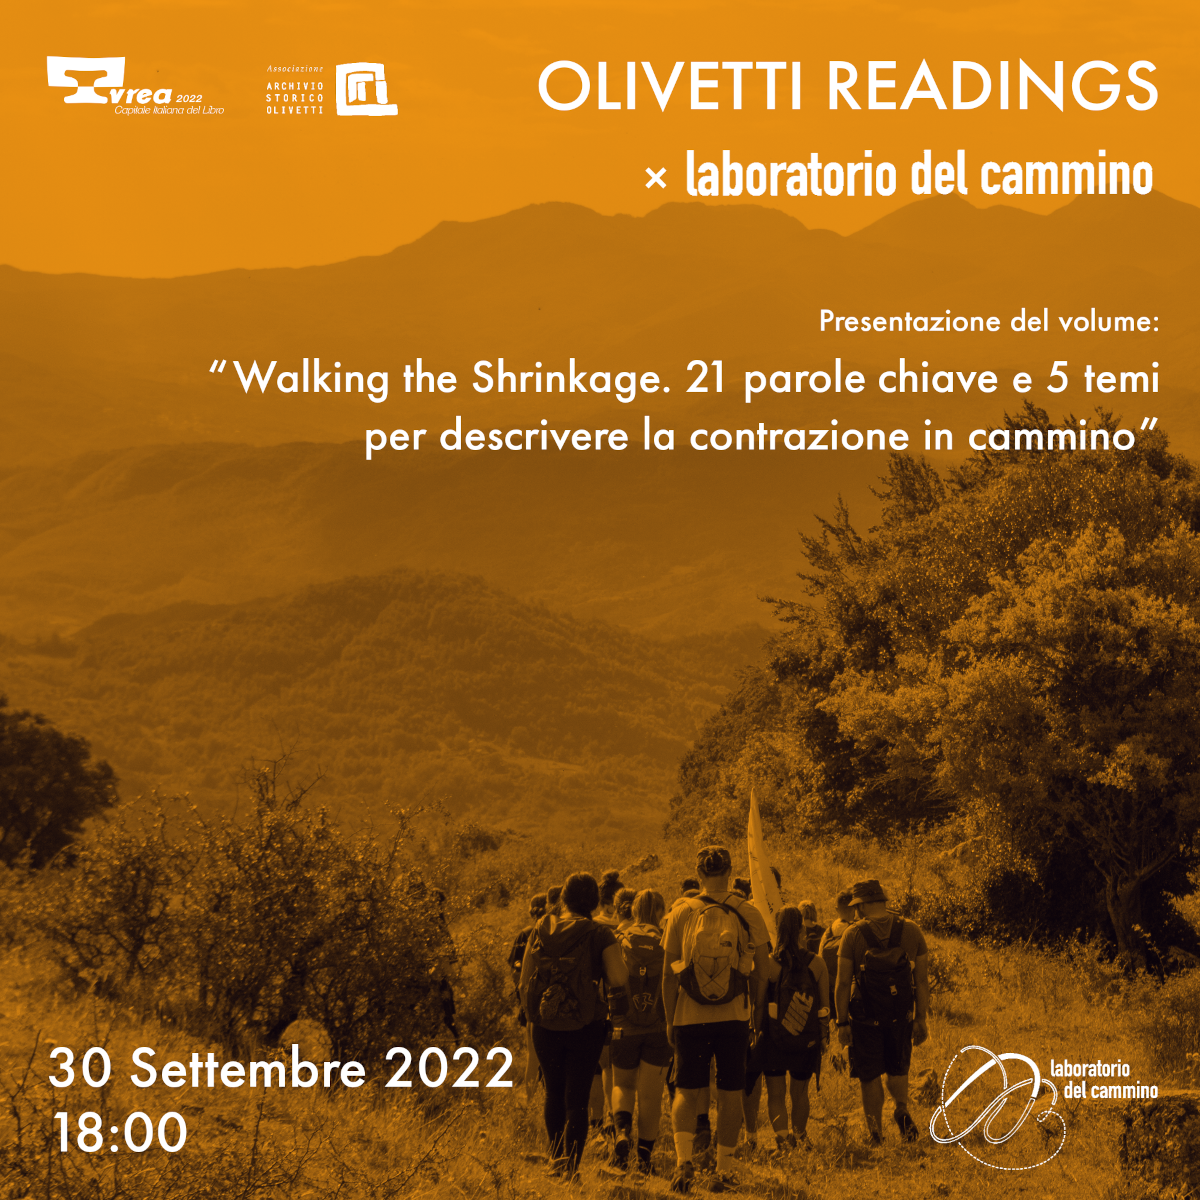 Olivetti Readings. Walking the Shrinkage. 21 parole chiave e 5 temi per descrivere la contrazione in cammino